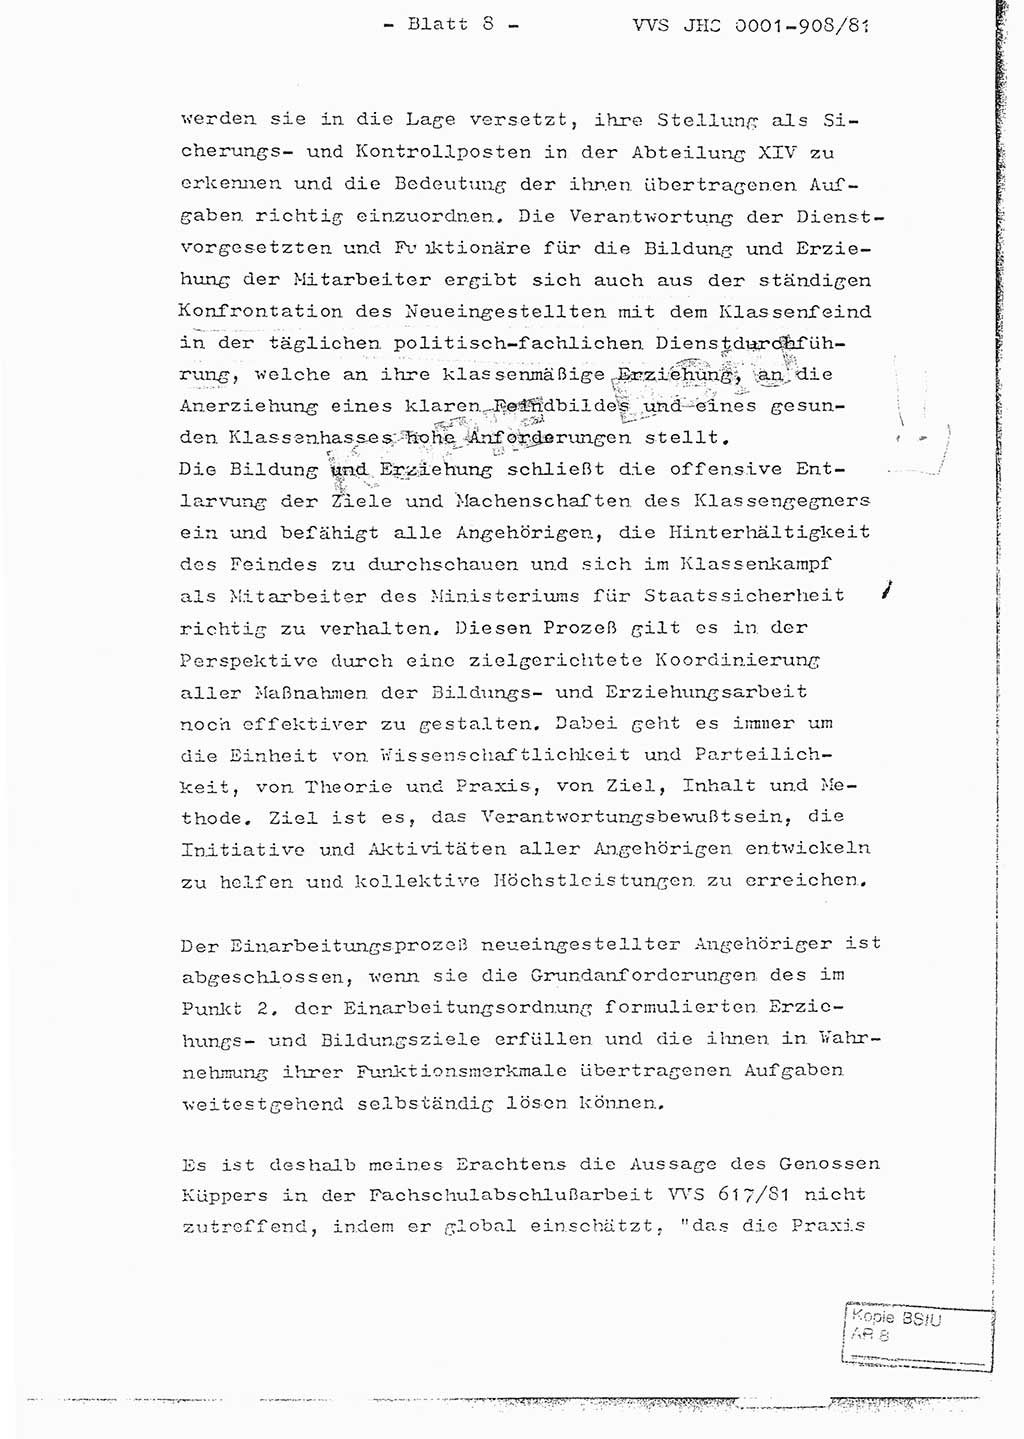 Fachschulabschlußarbeit Oberleutnant Wolfgang Wittmann (Abt. ⅩⅣ), Ministerium für Staatssicherheit (MfS) [Deutsche Demokratische Republik (DDR)], Juristische Hochschule (JHS), Vertrauliche Verschlußsache (VVS) o001-908/82, Potsdam 1982, Blatt 8 (FS-Abschl.-Arb. MfS DDR JHS VVS o001-908/82 1982, Bl. 8)